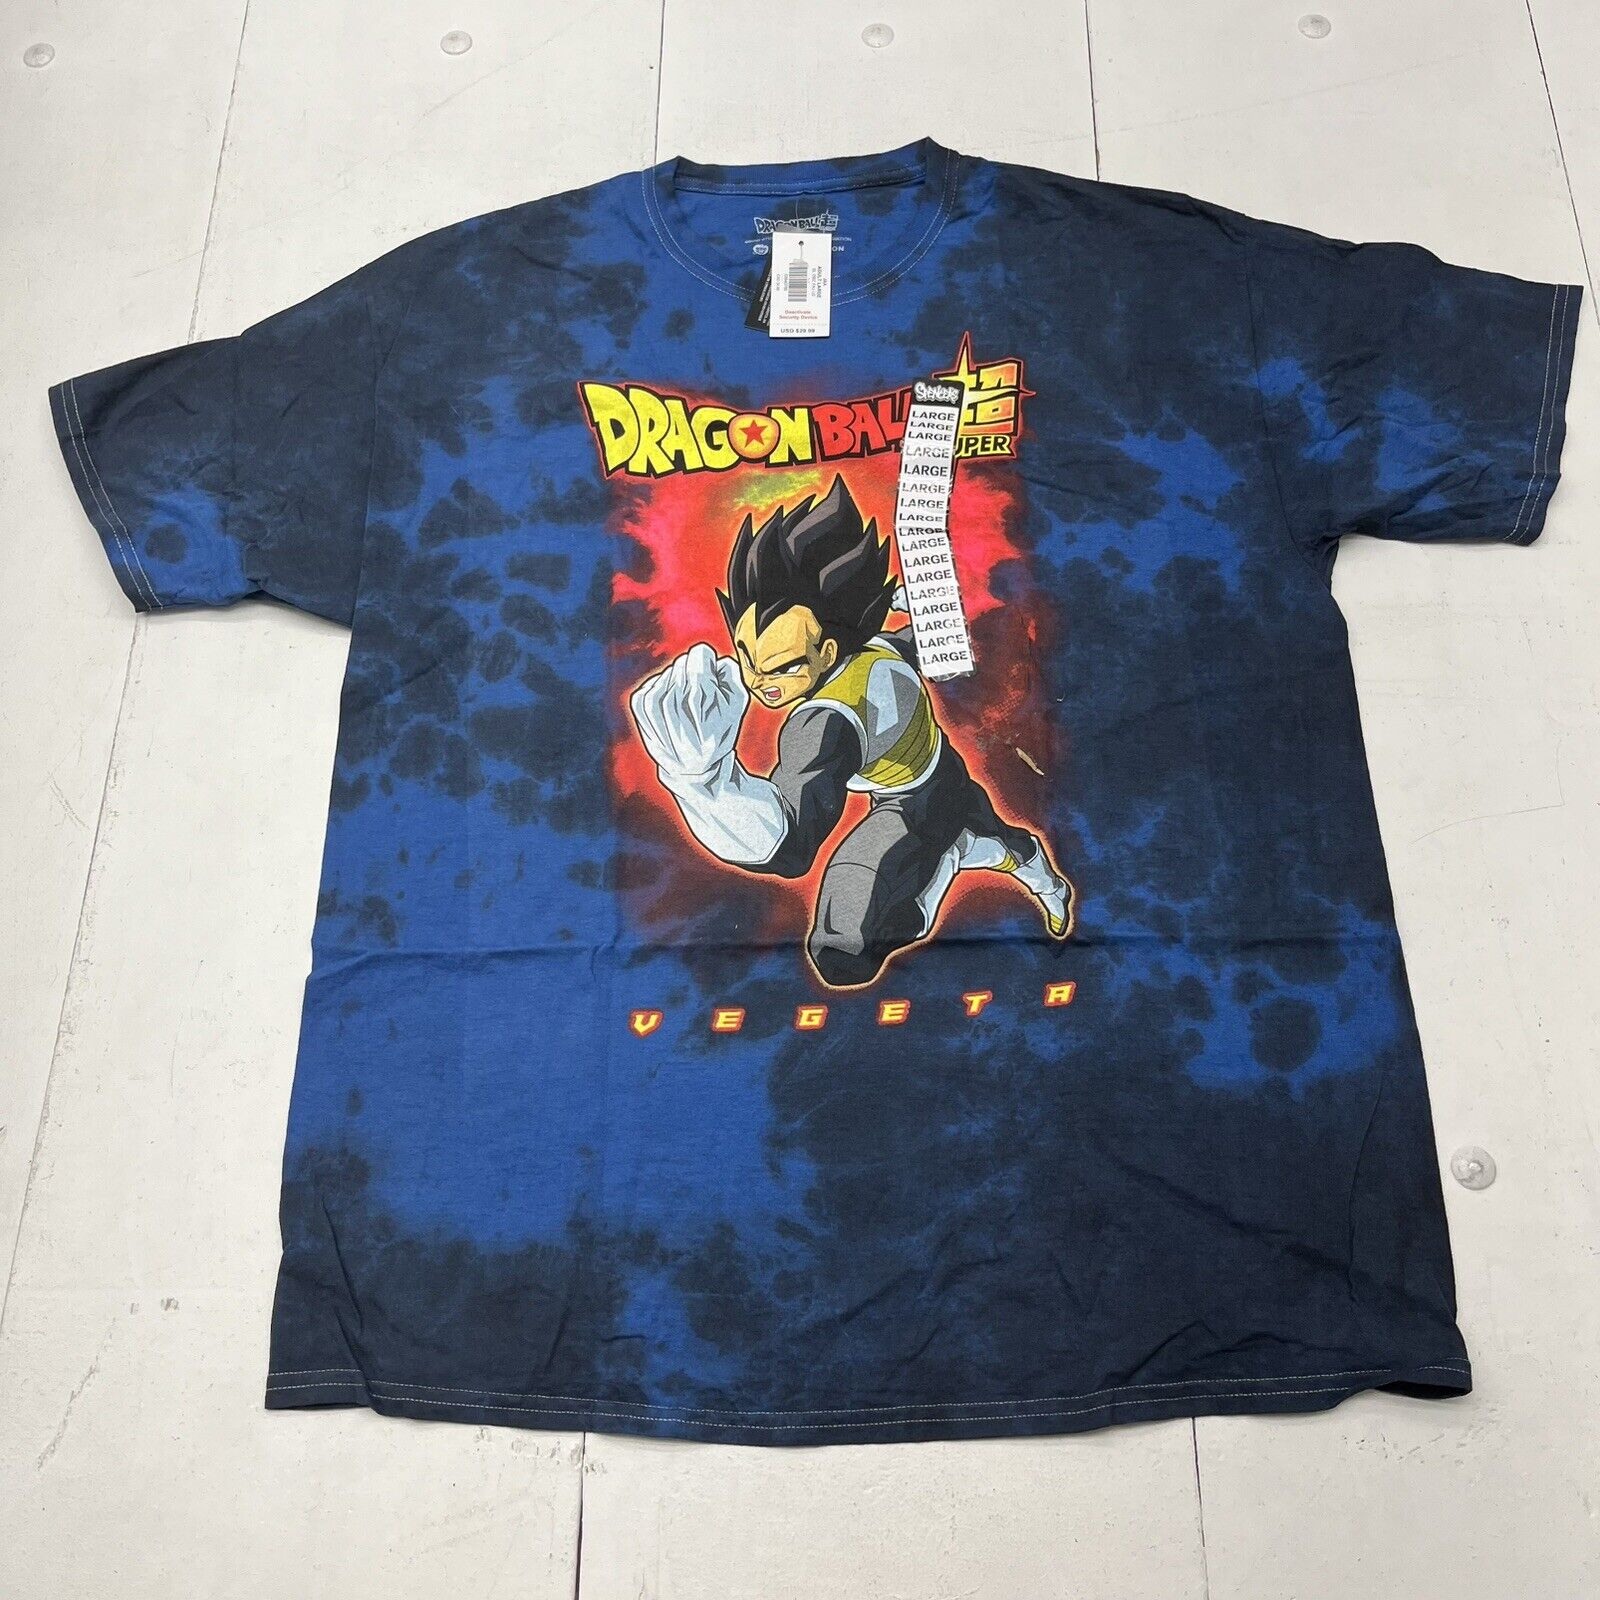 Dragon Ball Z Blue Tie Dye Graphic T-Shirt Men’s Size Large NEW